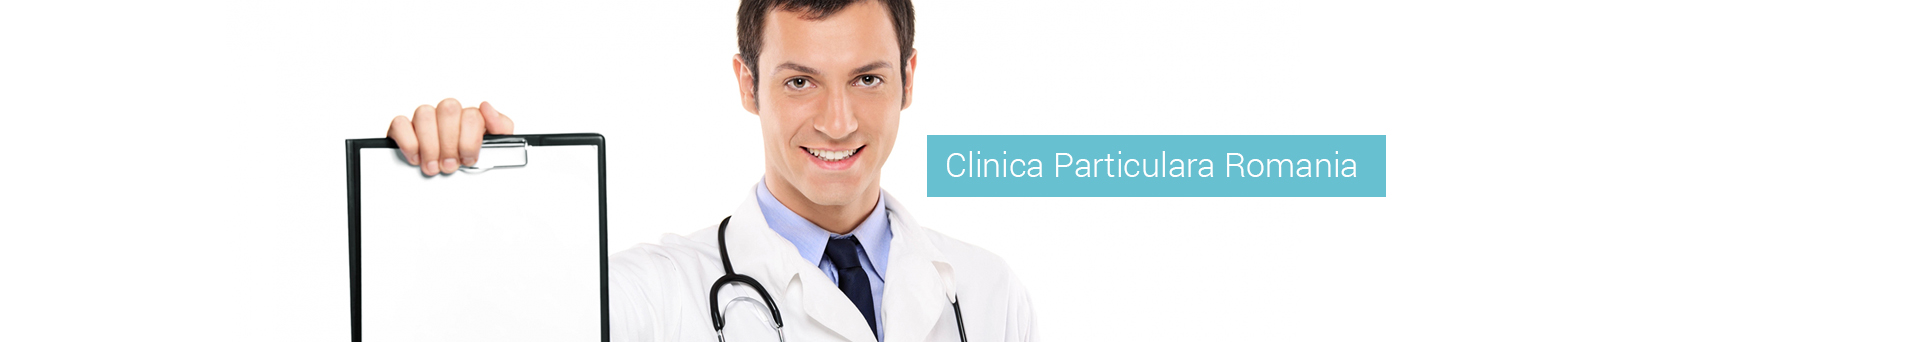 Clinica Particulara